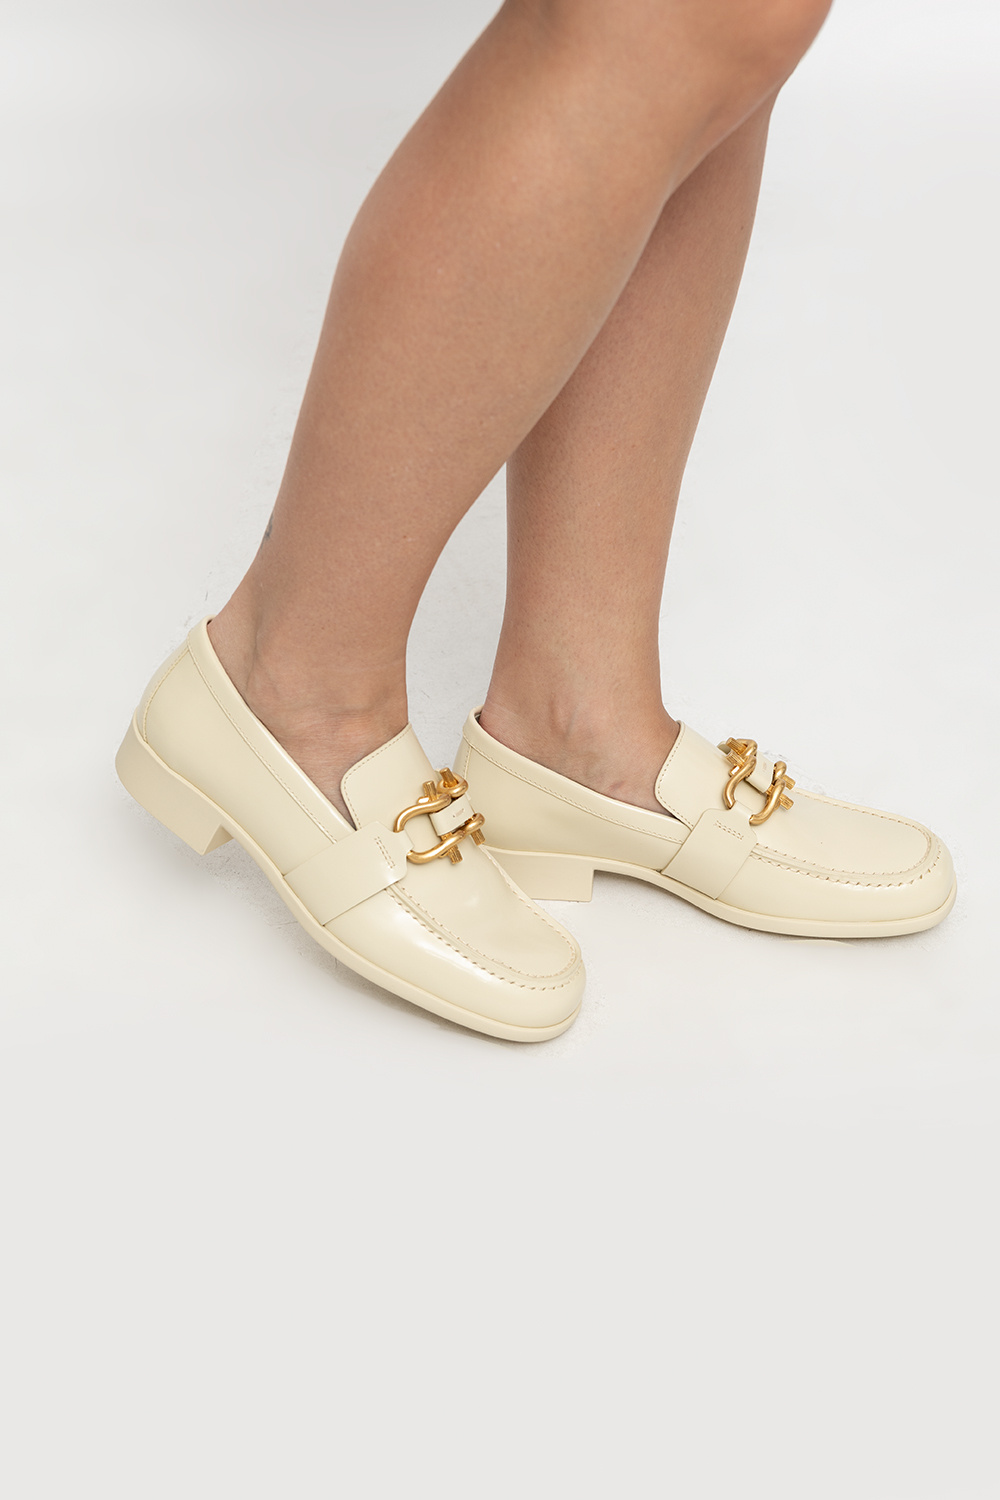 Bottega Veneta ‘Monsieur’ loafers